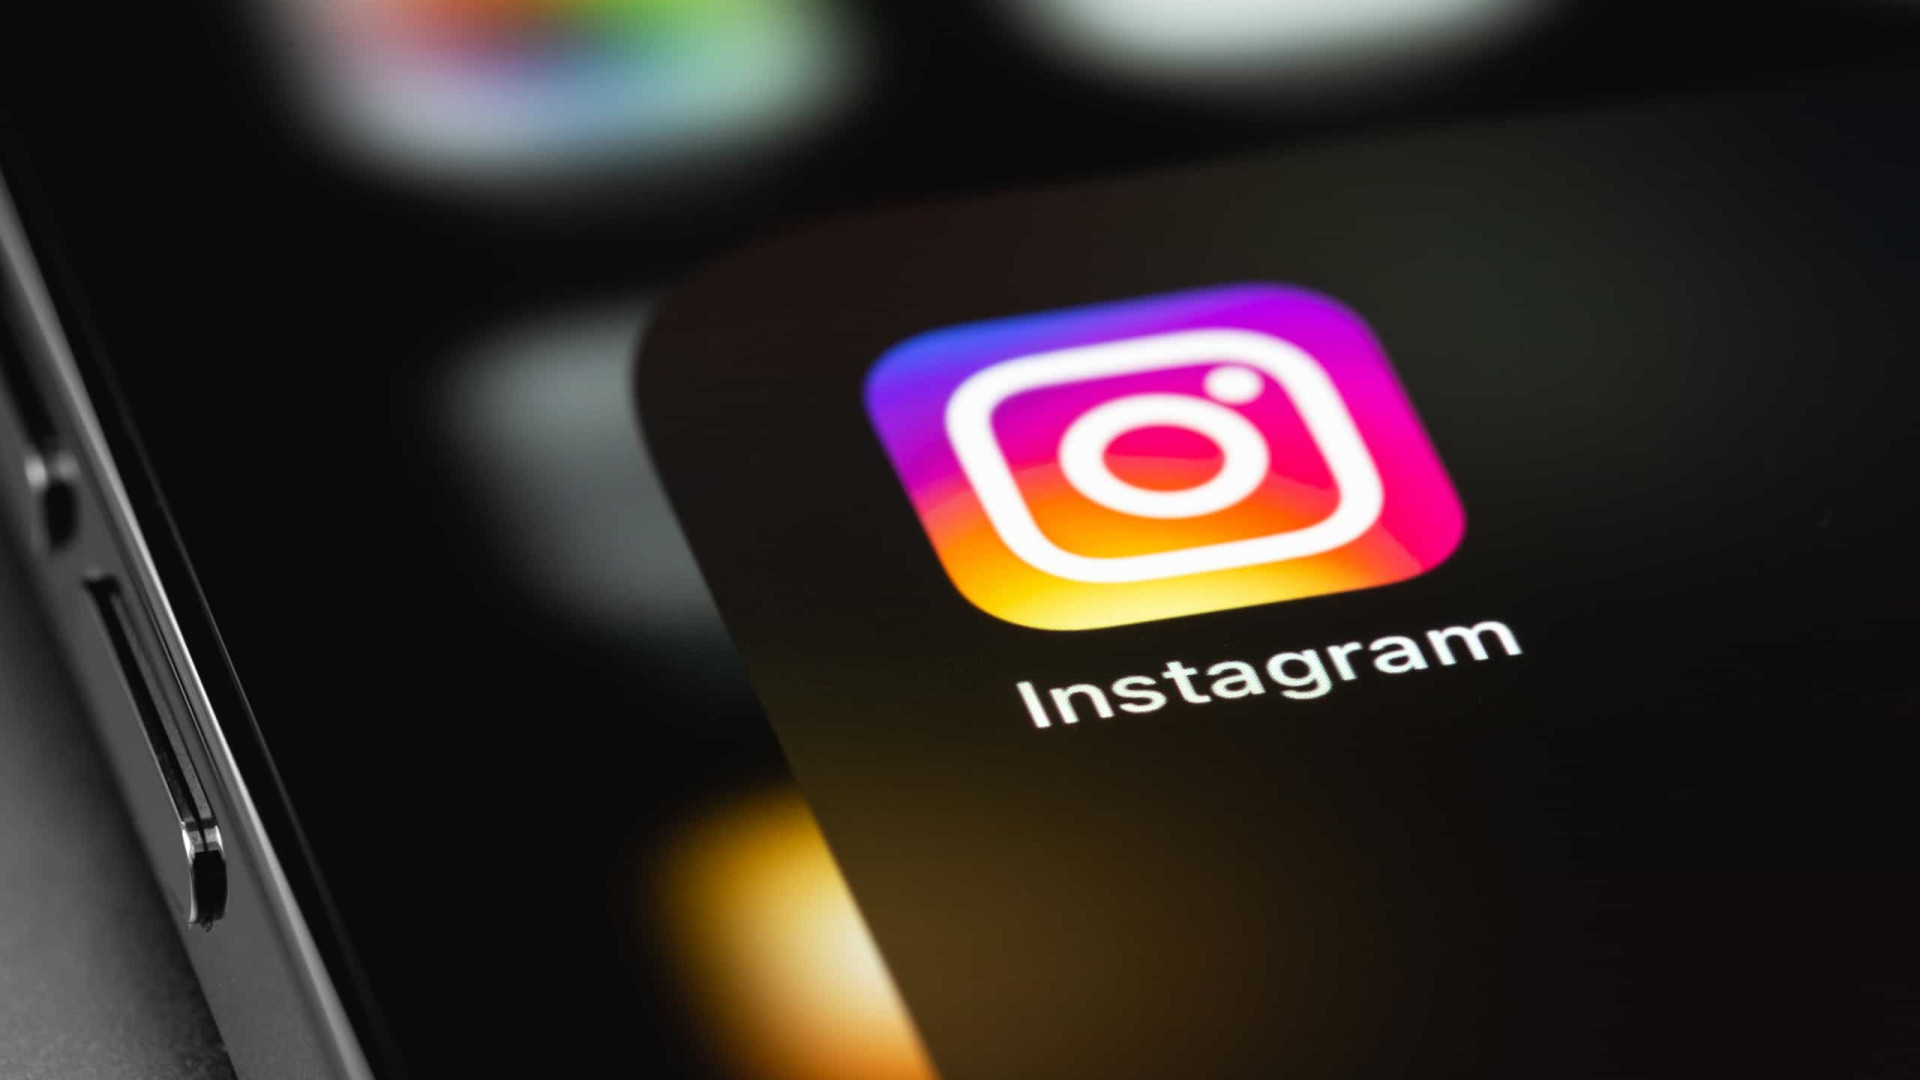 Das polaroids às fotos ocultas; as novidades dos ‘Stories’ do Instagram